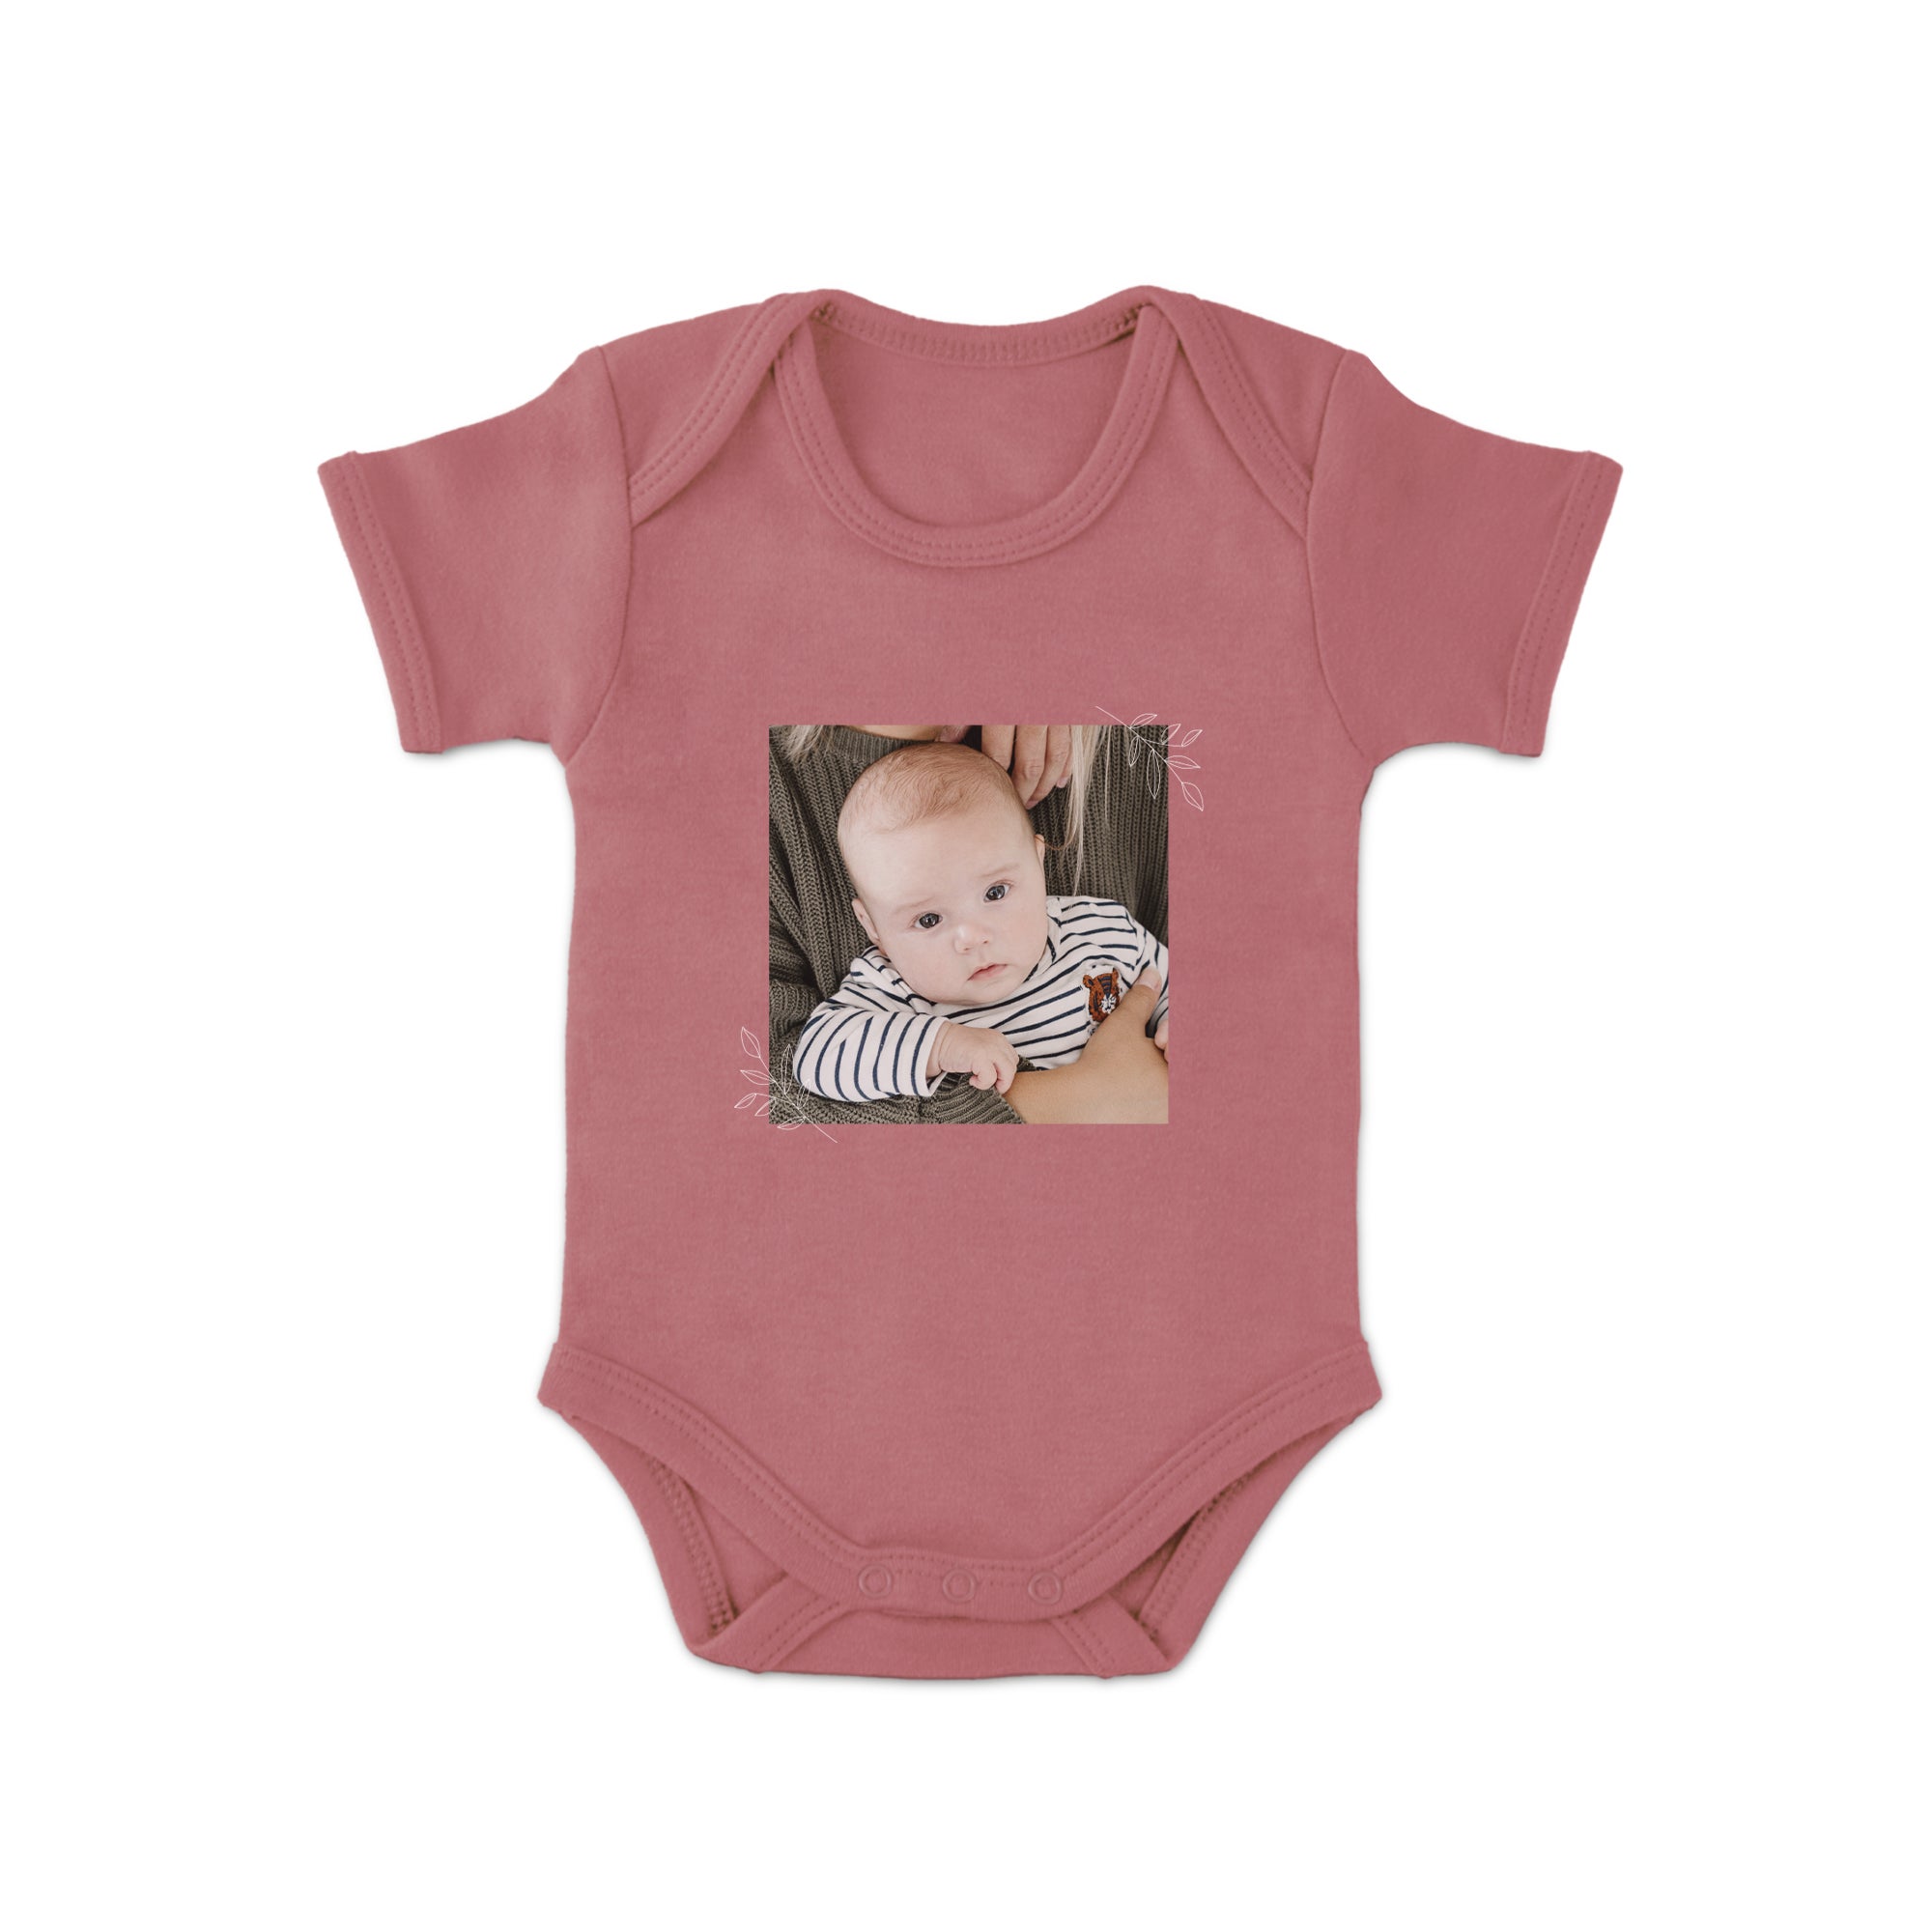 Baby Body selbst gestalten Pink 50 56  - Onlineshop YourSurprise